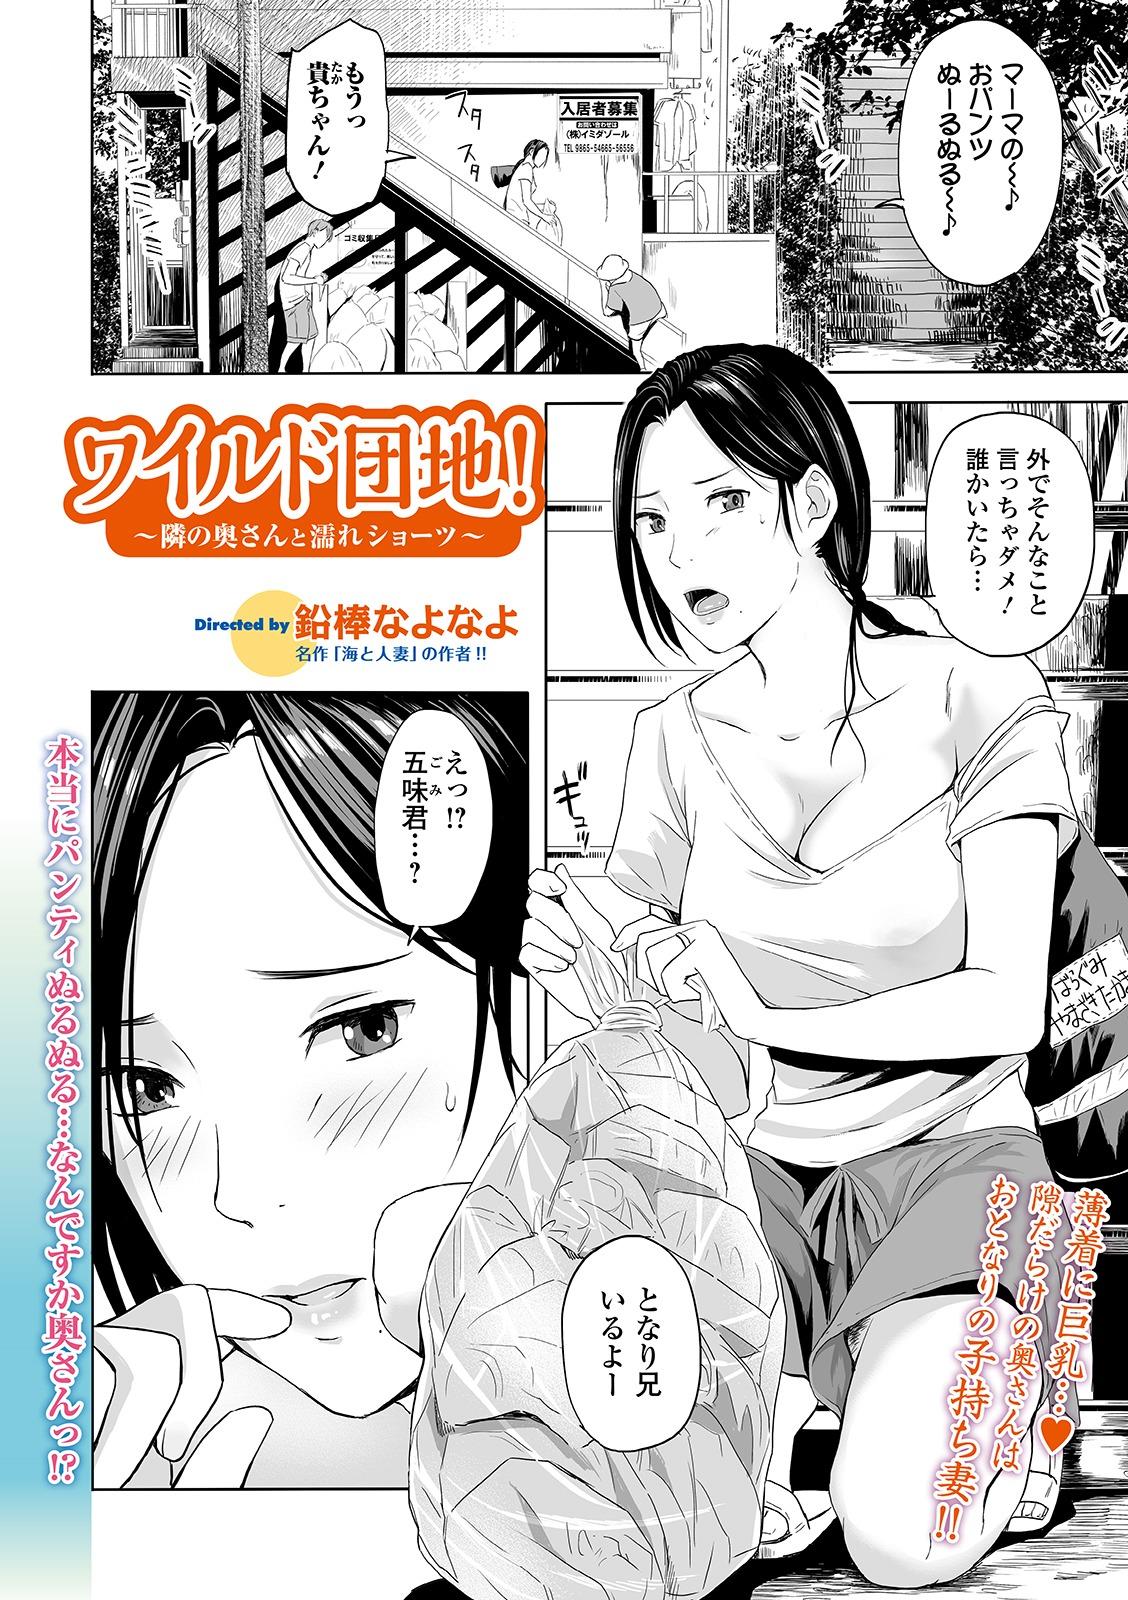 Tranny Sex Web Comic Toutetsu Vol. 44 Chichona - Page 4